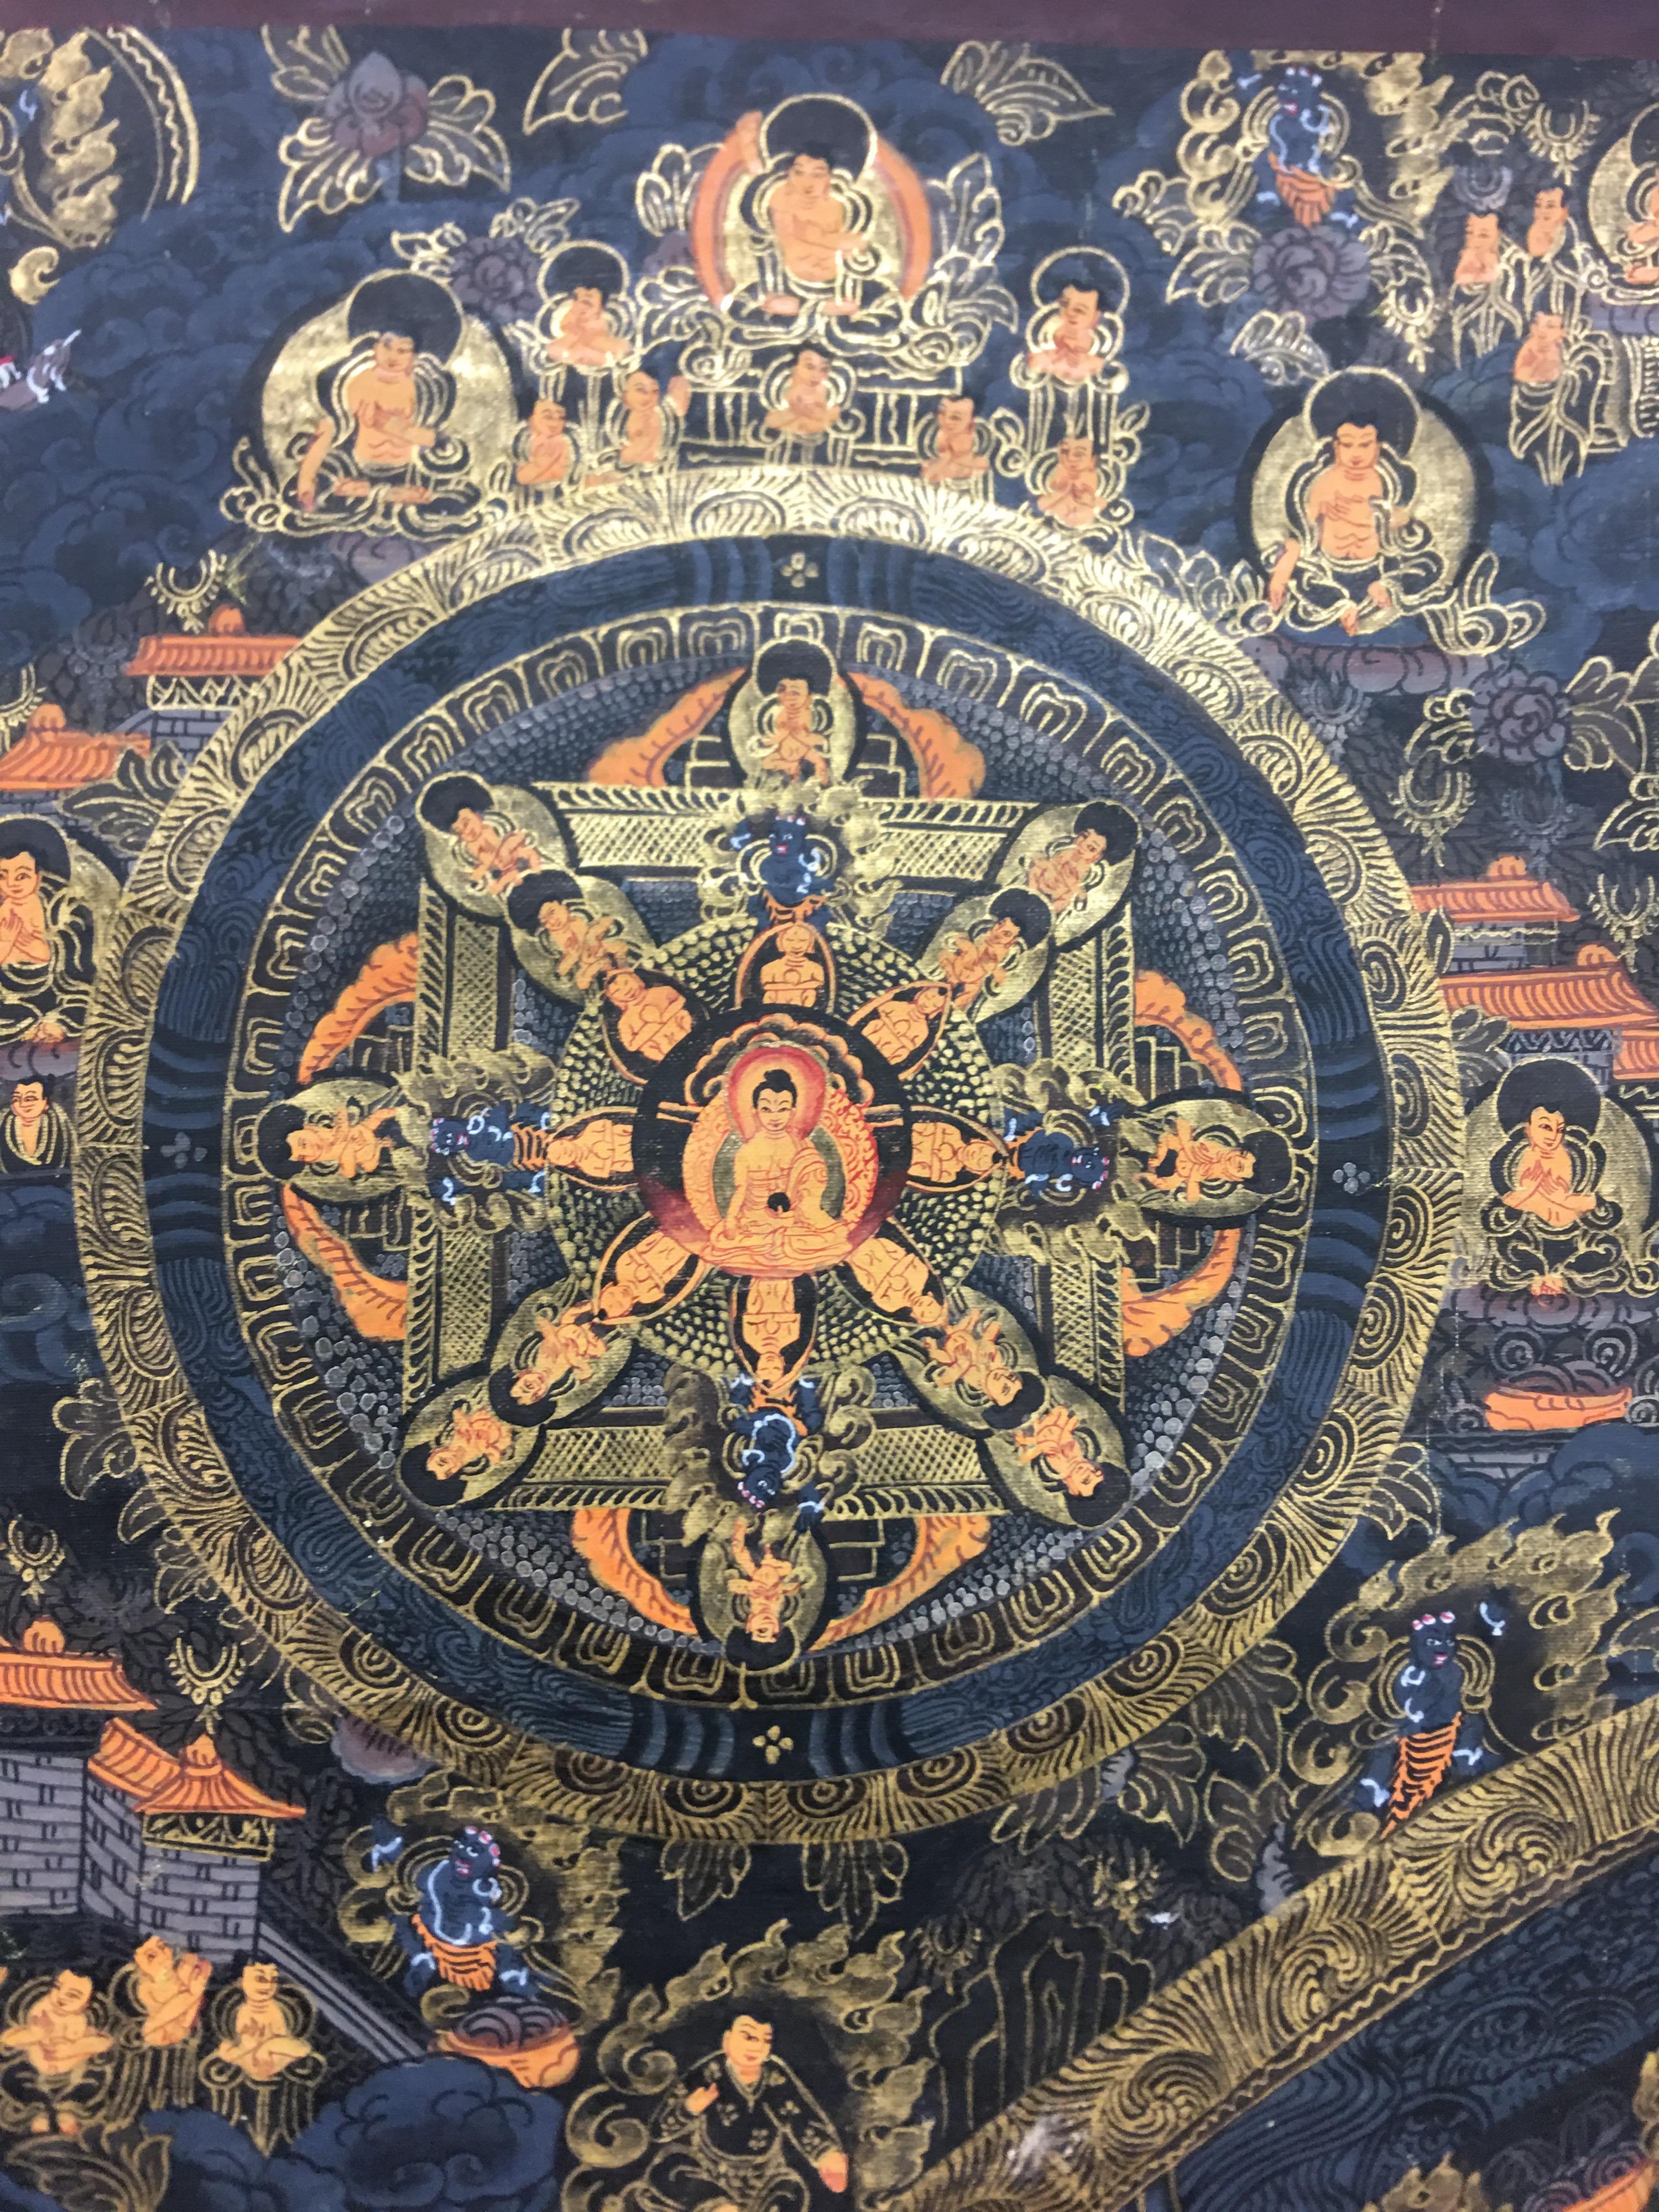 Ten Mandala peint sur toile en or véritable 24 carats est une peinture thangka unique en son genre. La thangka est un rituel que les peintres bouddhistes utilisent pour prier ou méditer. Le processus de fabrication d'une thangka comporte plusieurs